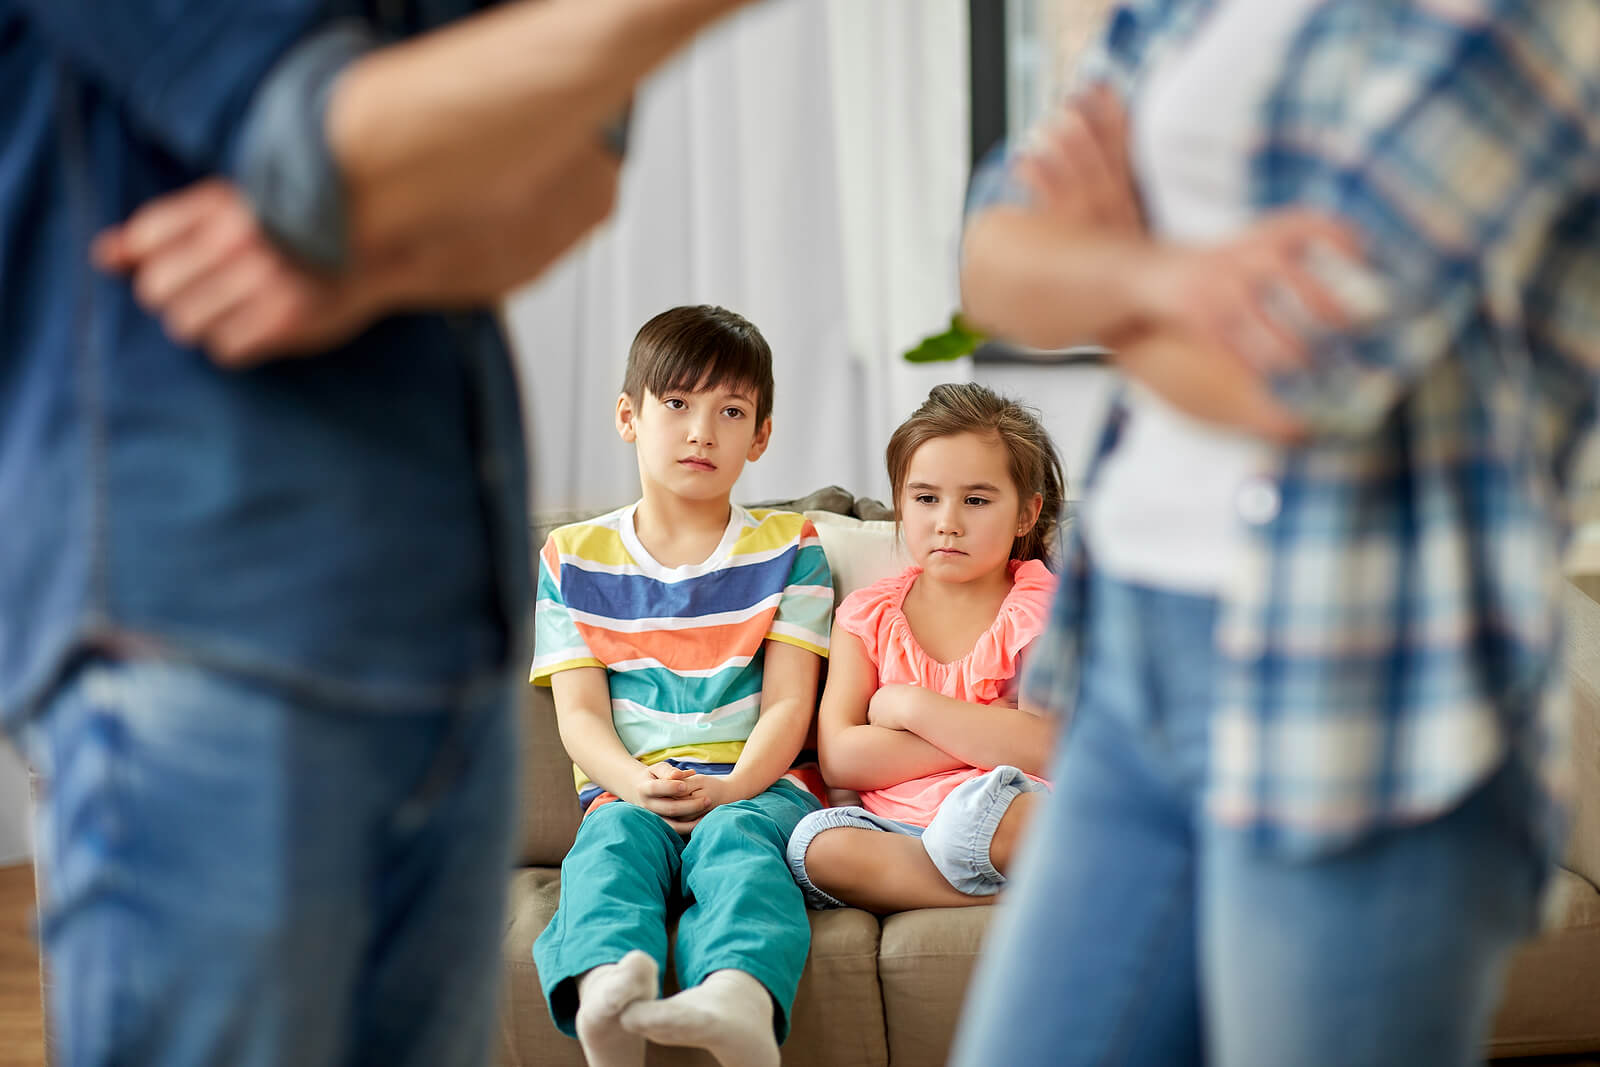 Padres manteniendo una discusión delante de sus hijos para luego reconciliarse.